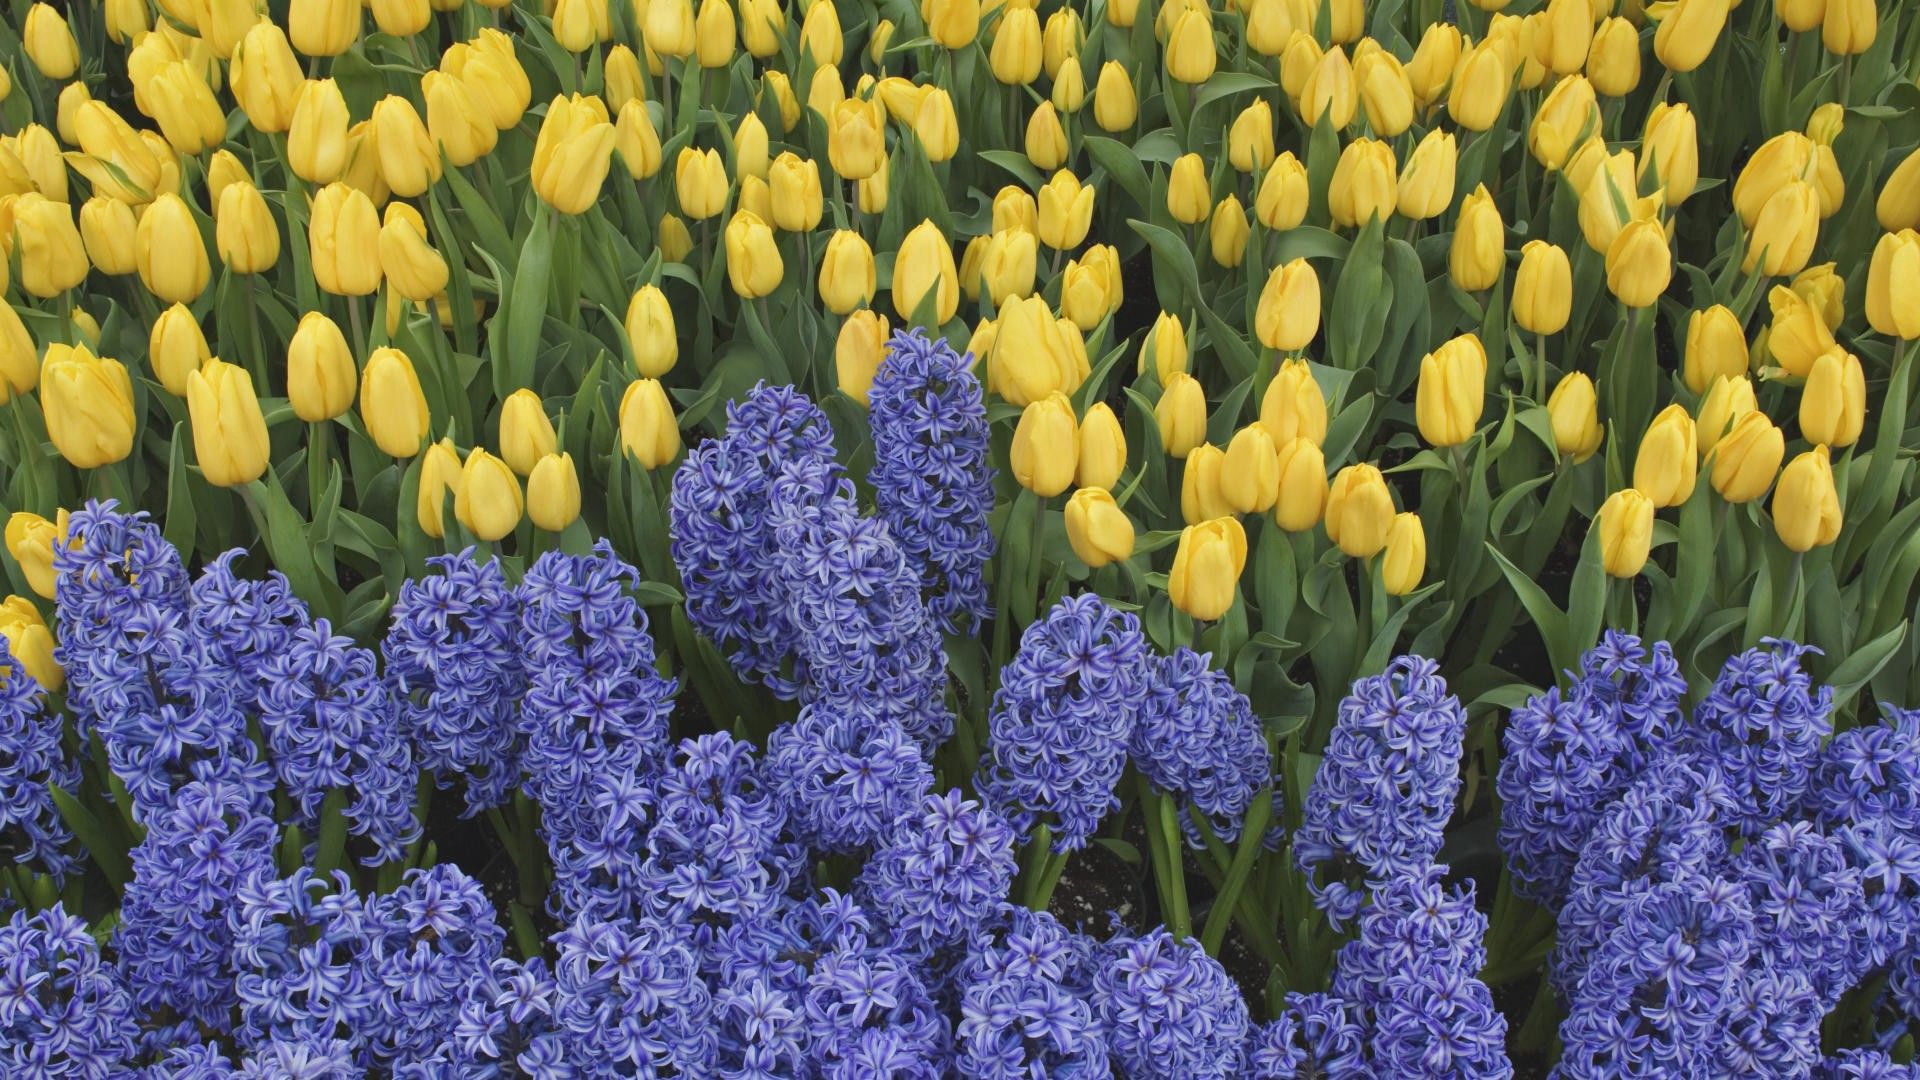 flowers, tulips, greens, flower bed, flowerbed, spring, hyacinths